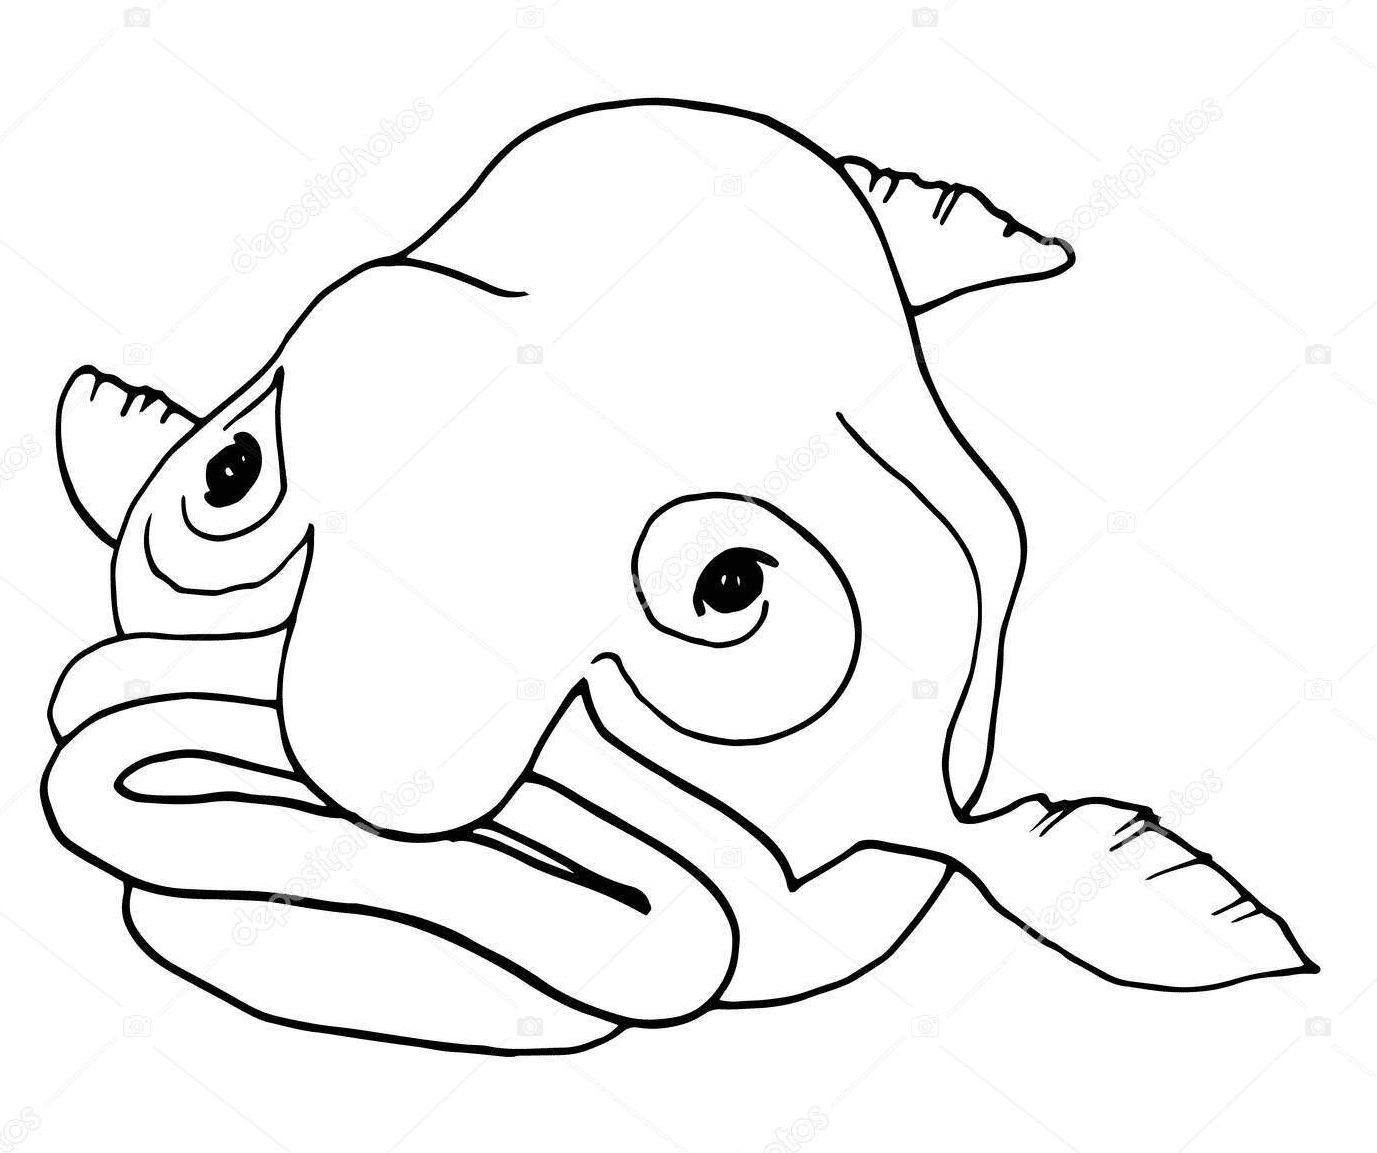 Um Blobfish de Blobfish